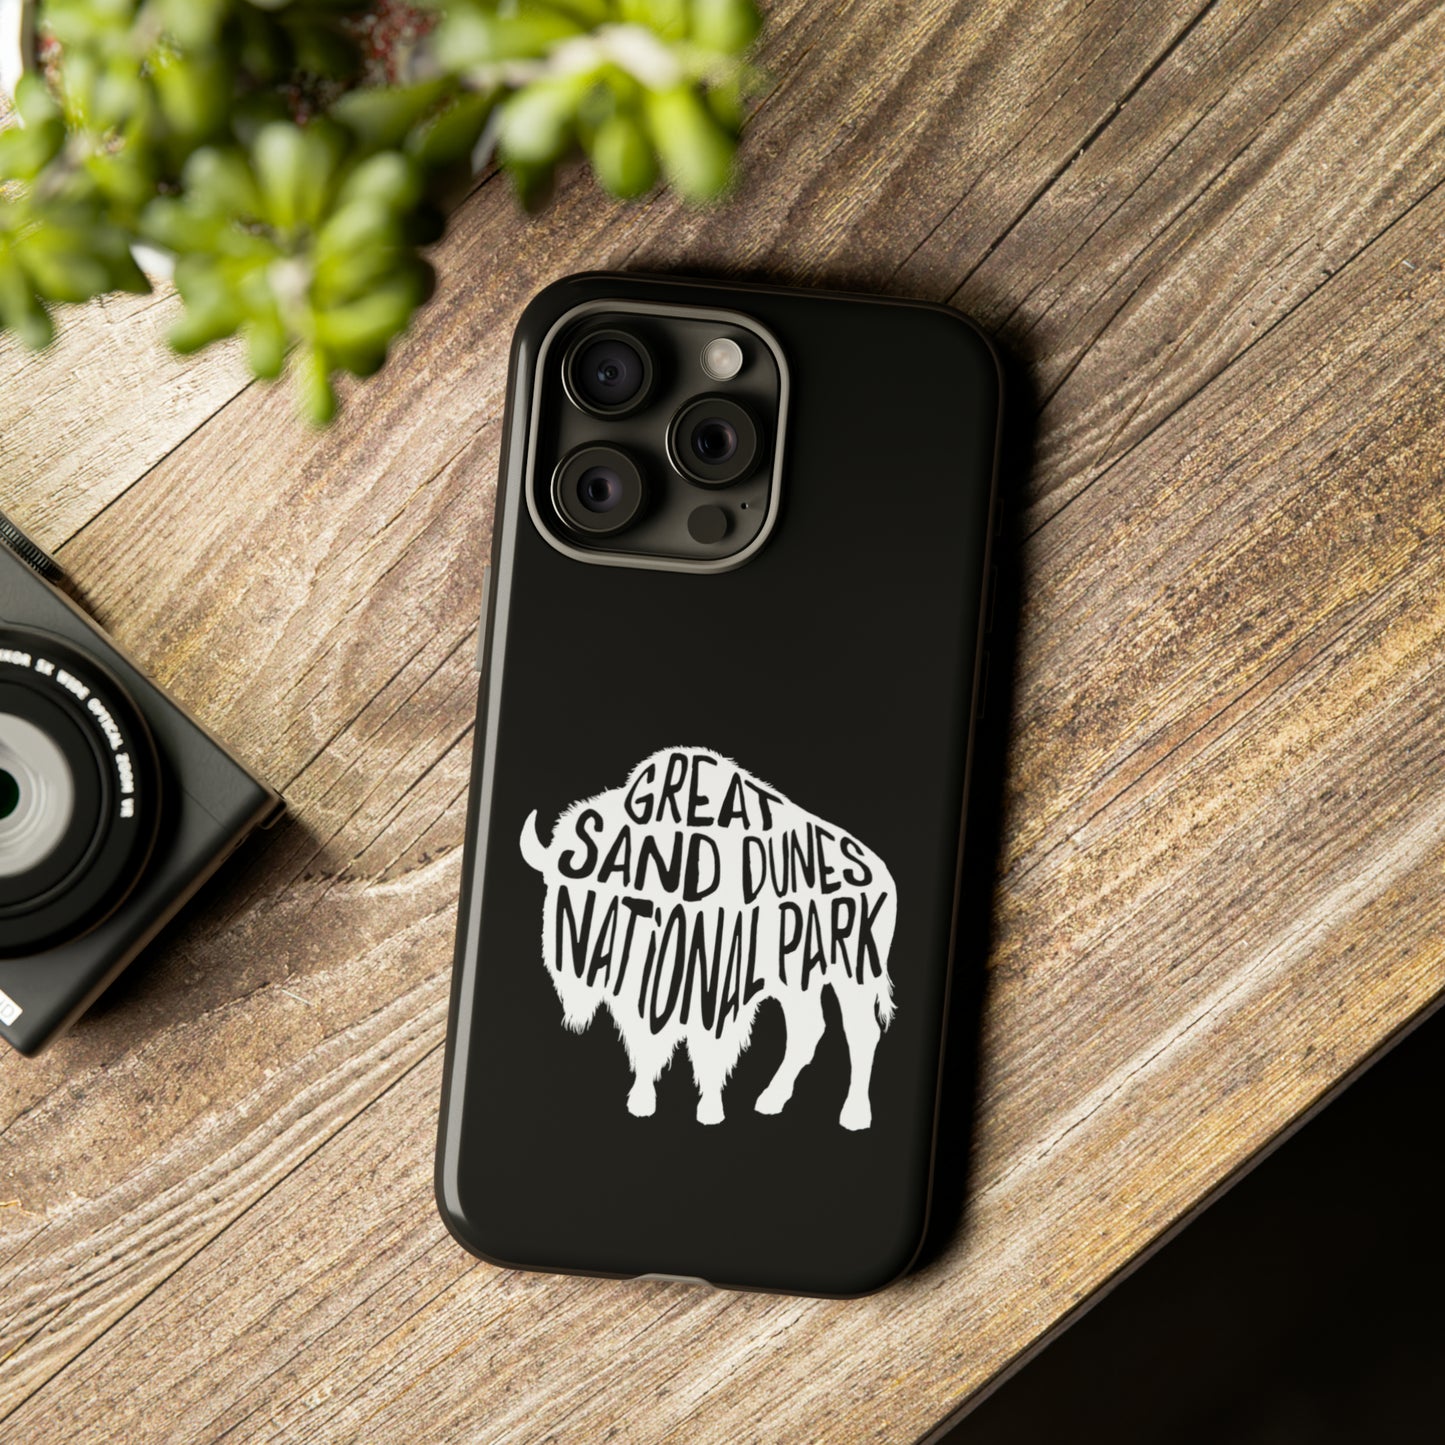 Great Sand Dunes National Park Phone Case - Bison Design